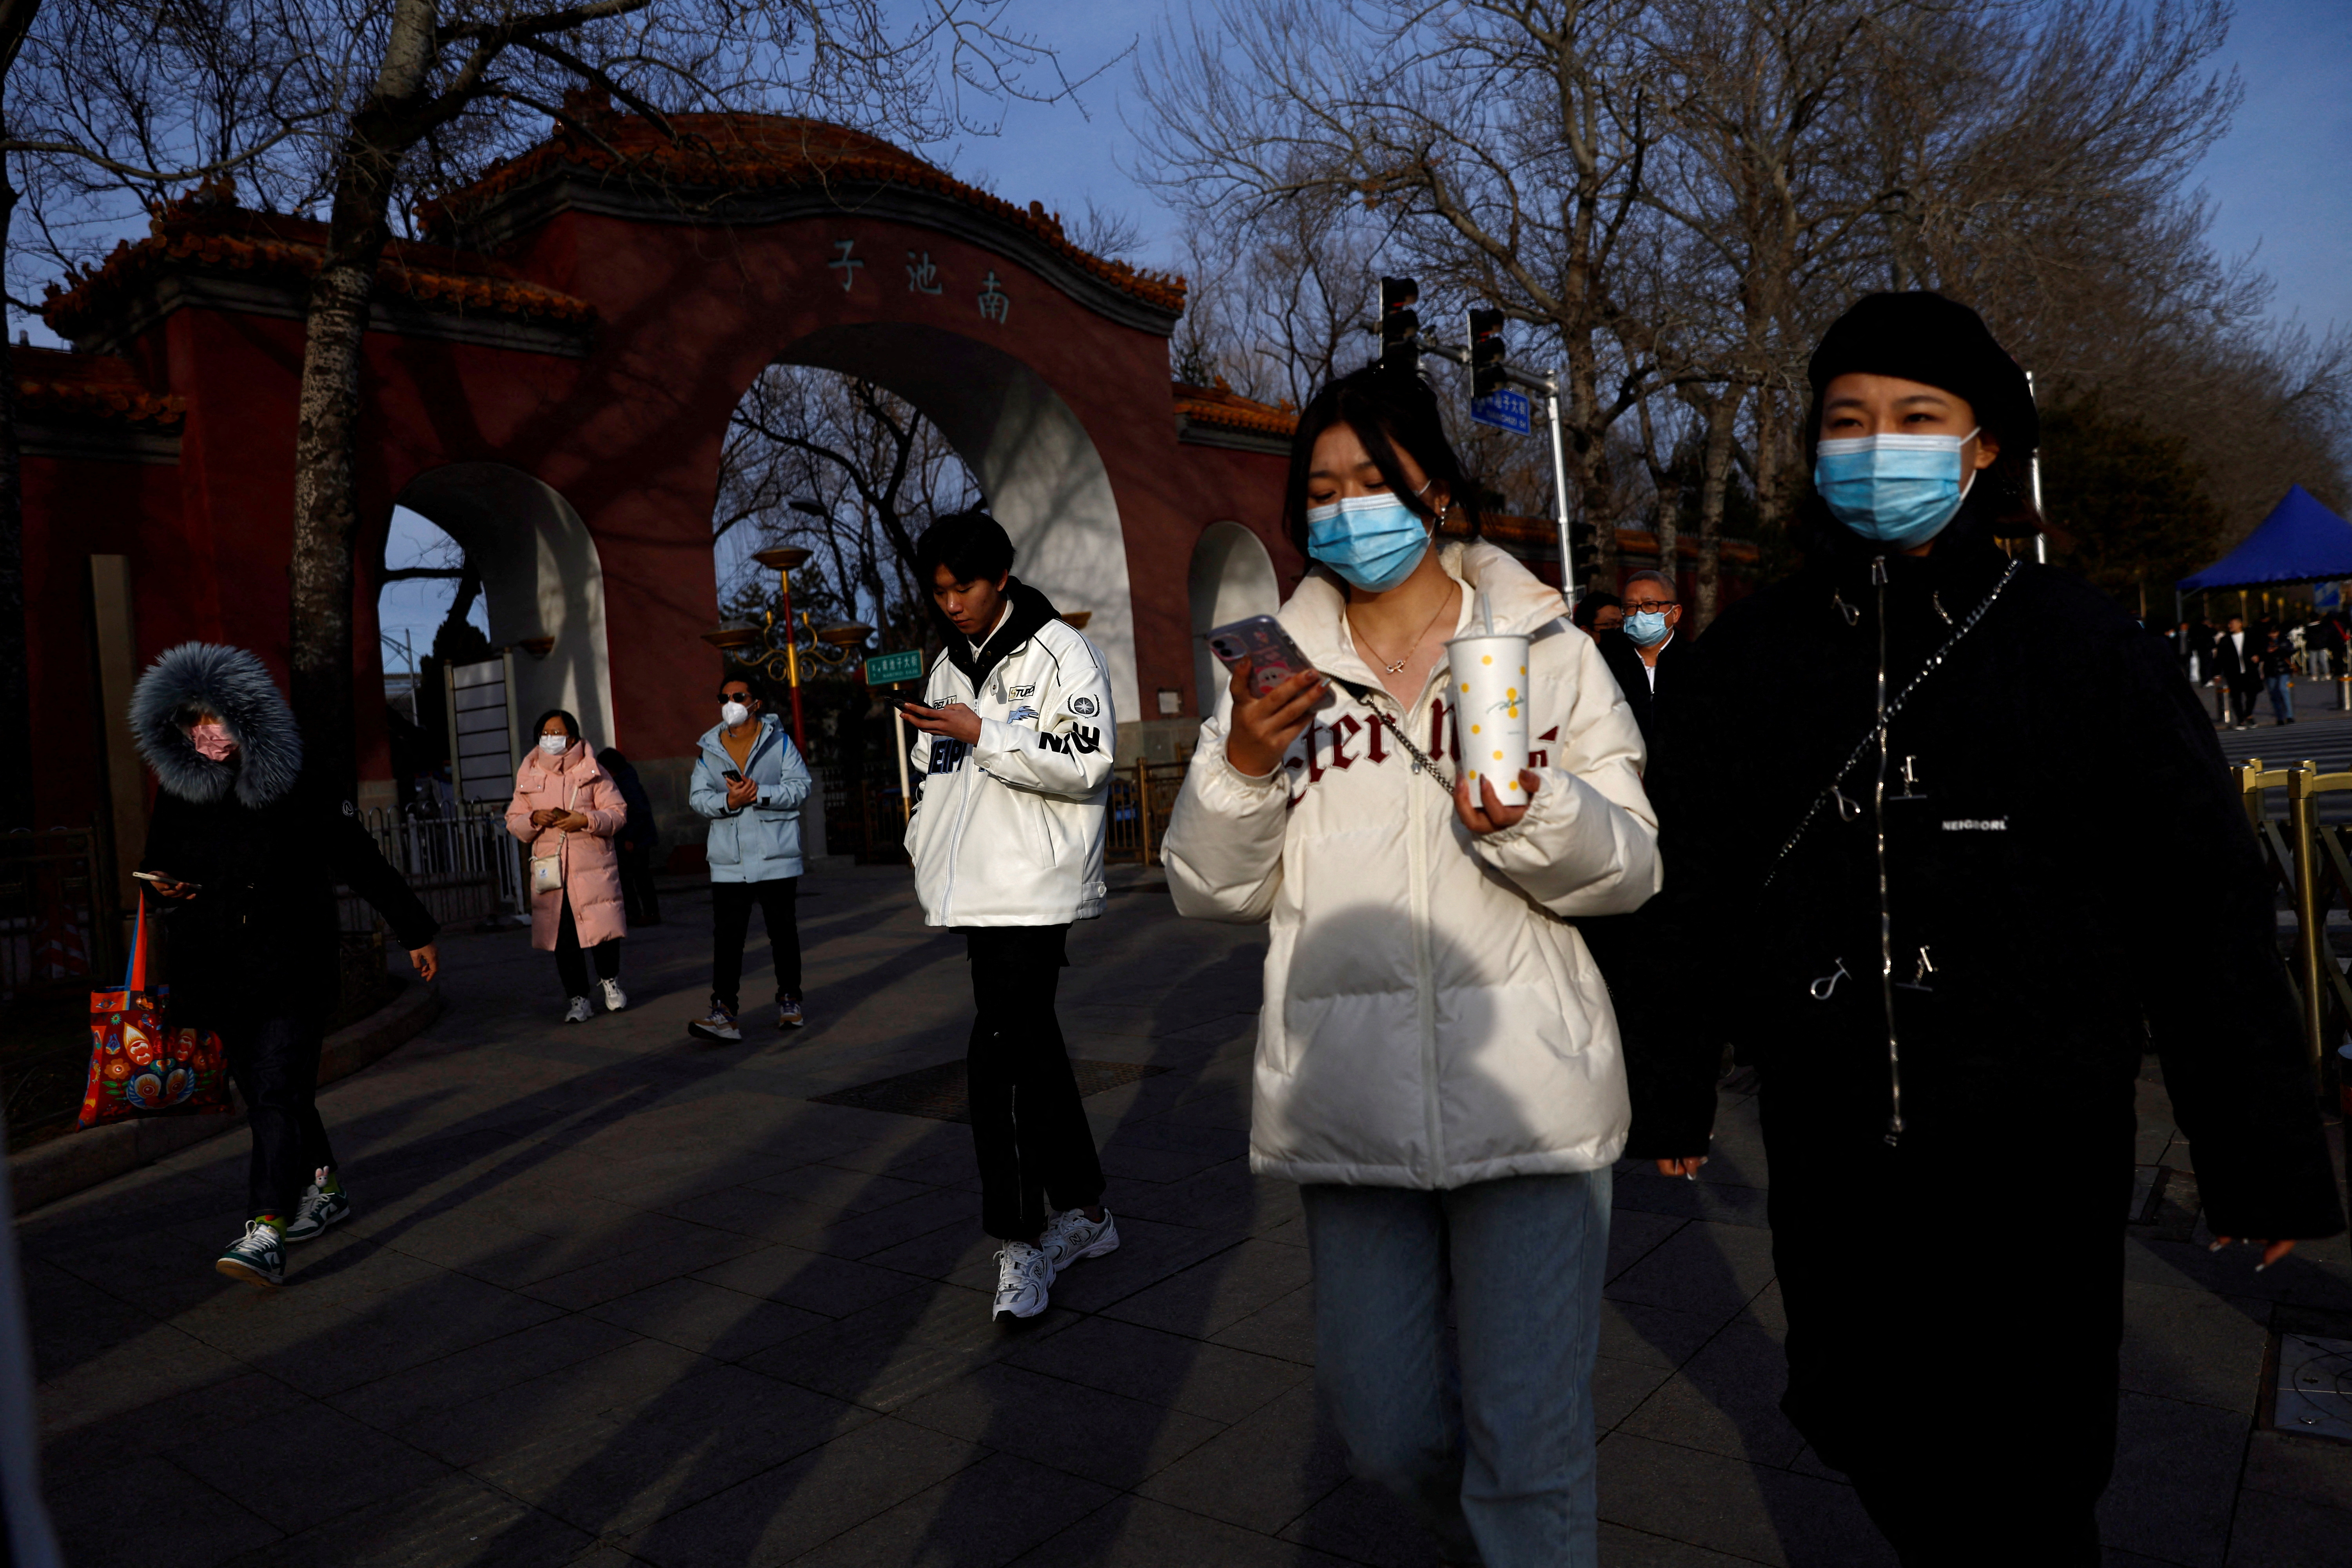 中国で呼吸器疾患増加、ＷＨＯが報告要請 中国当局はデータ提供 - ロイター (Reuters Japan)